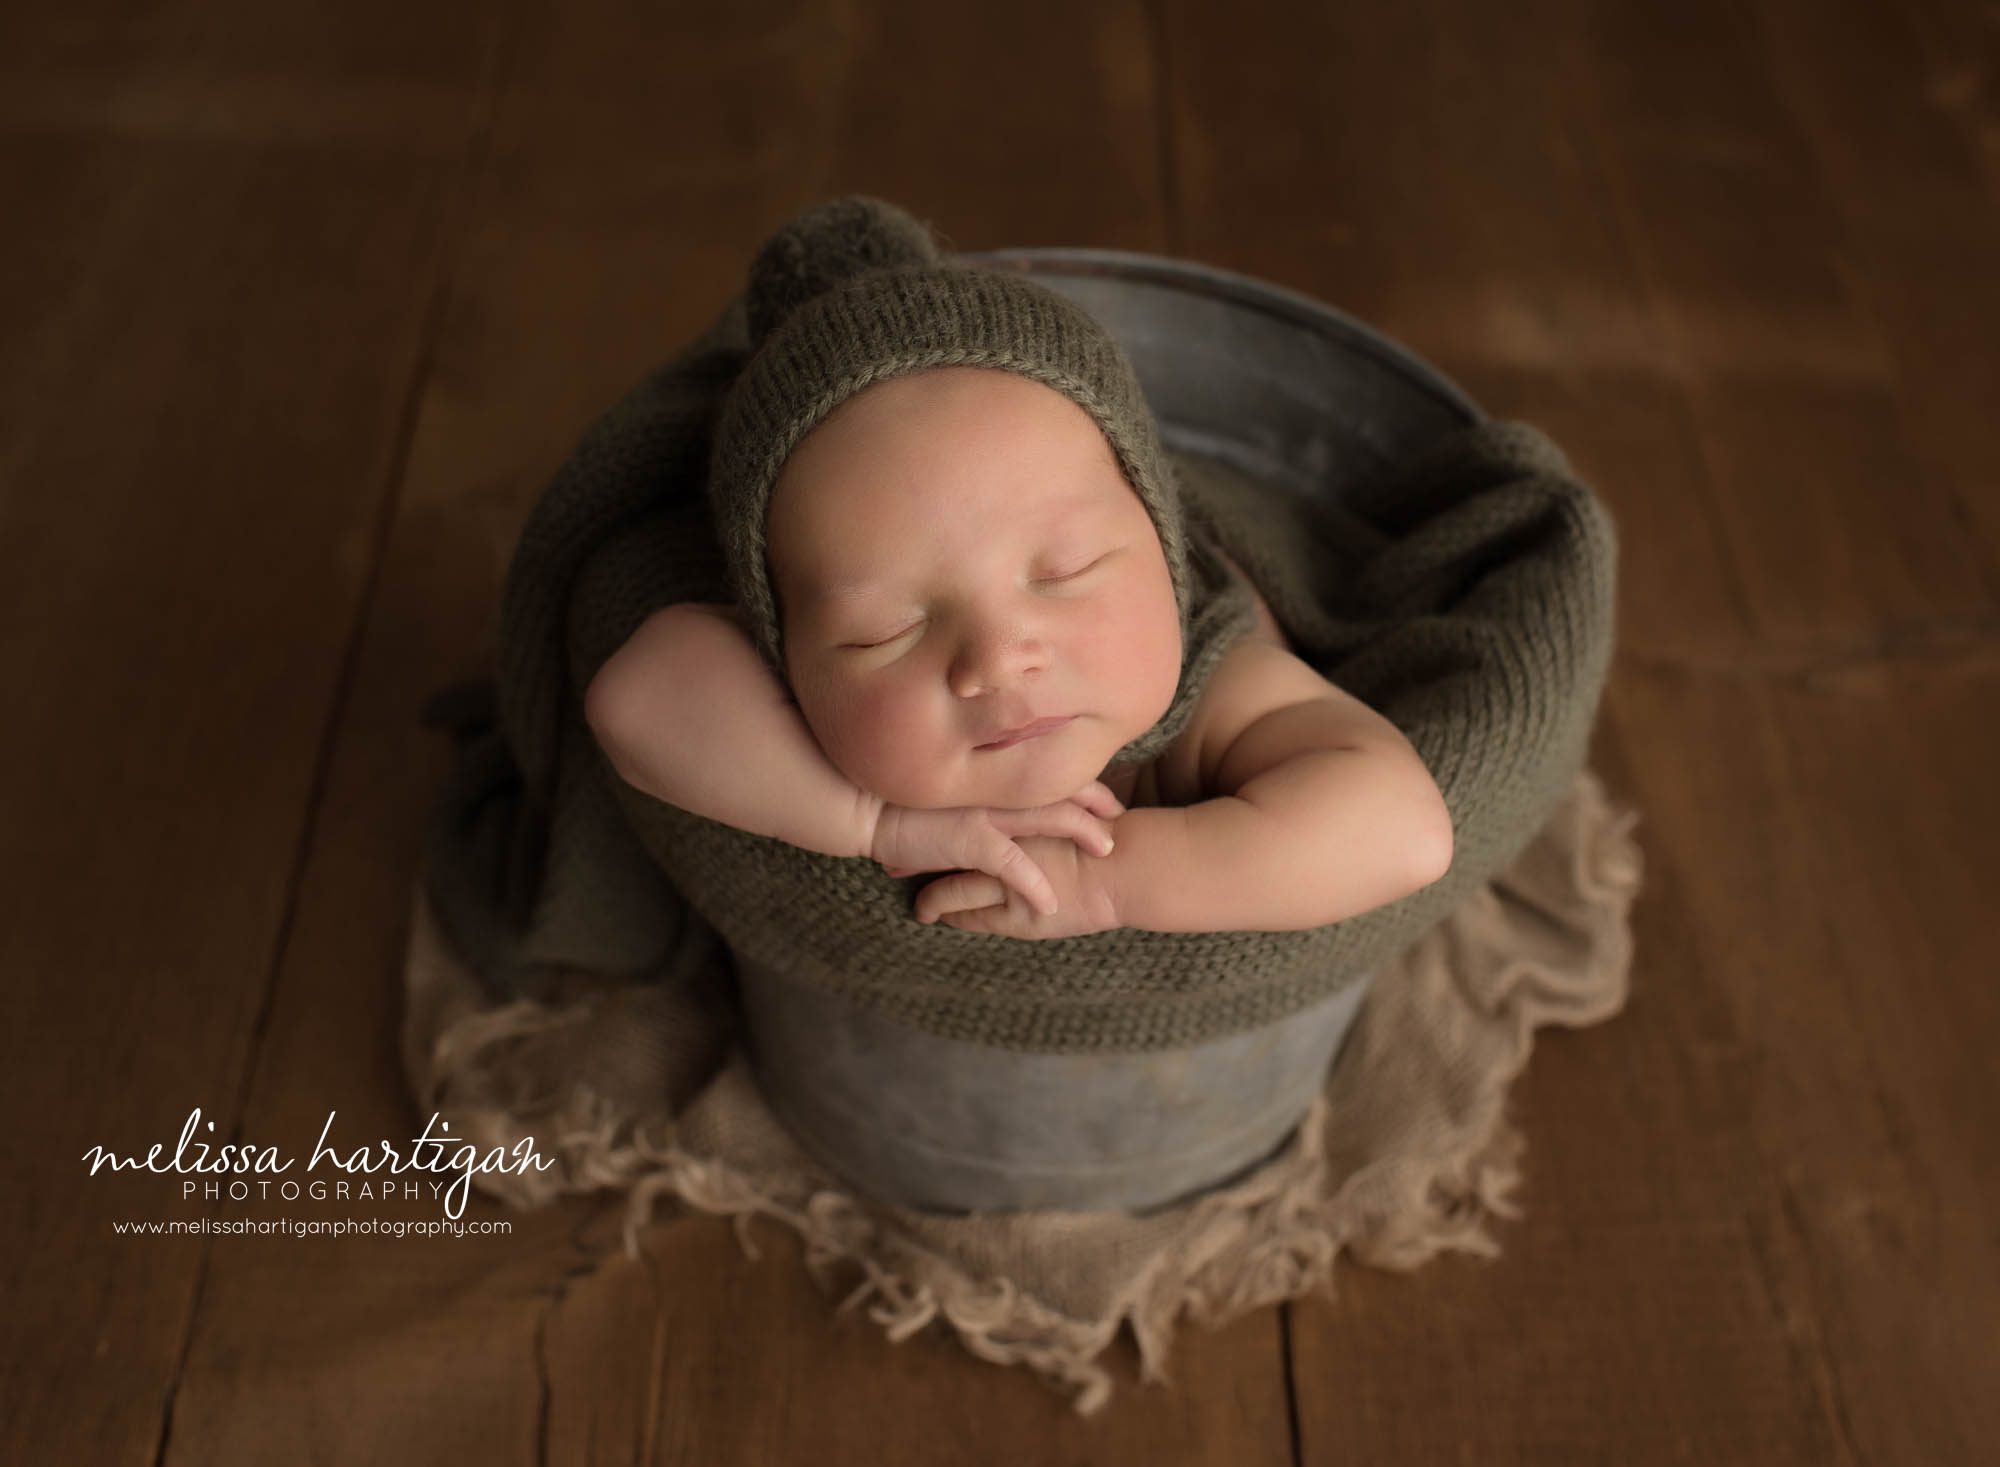 newborn baby boy posed in metal bucket wearing green pom sleepy cap bonnet